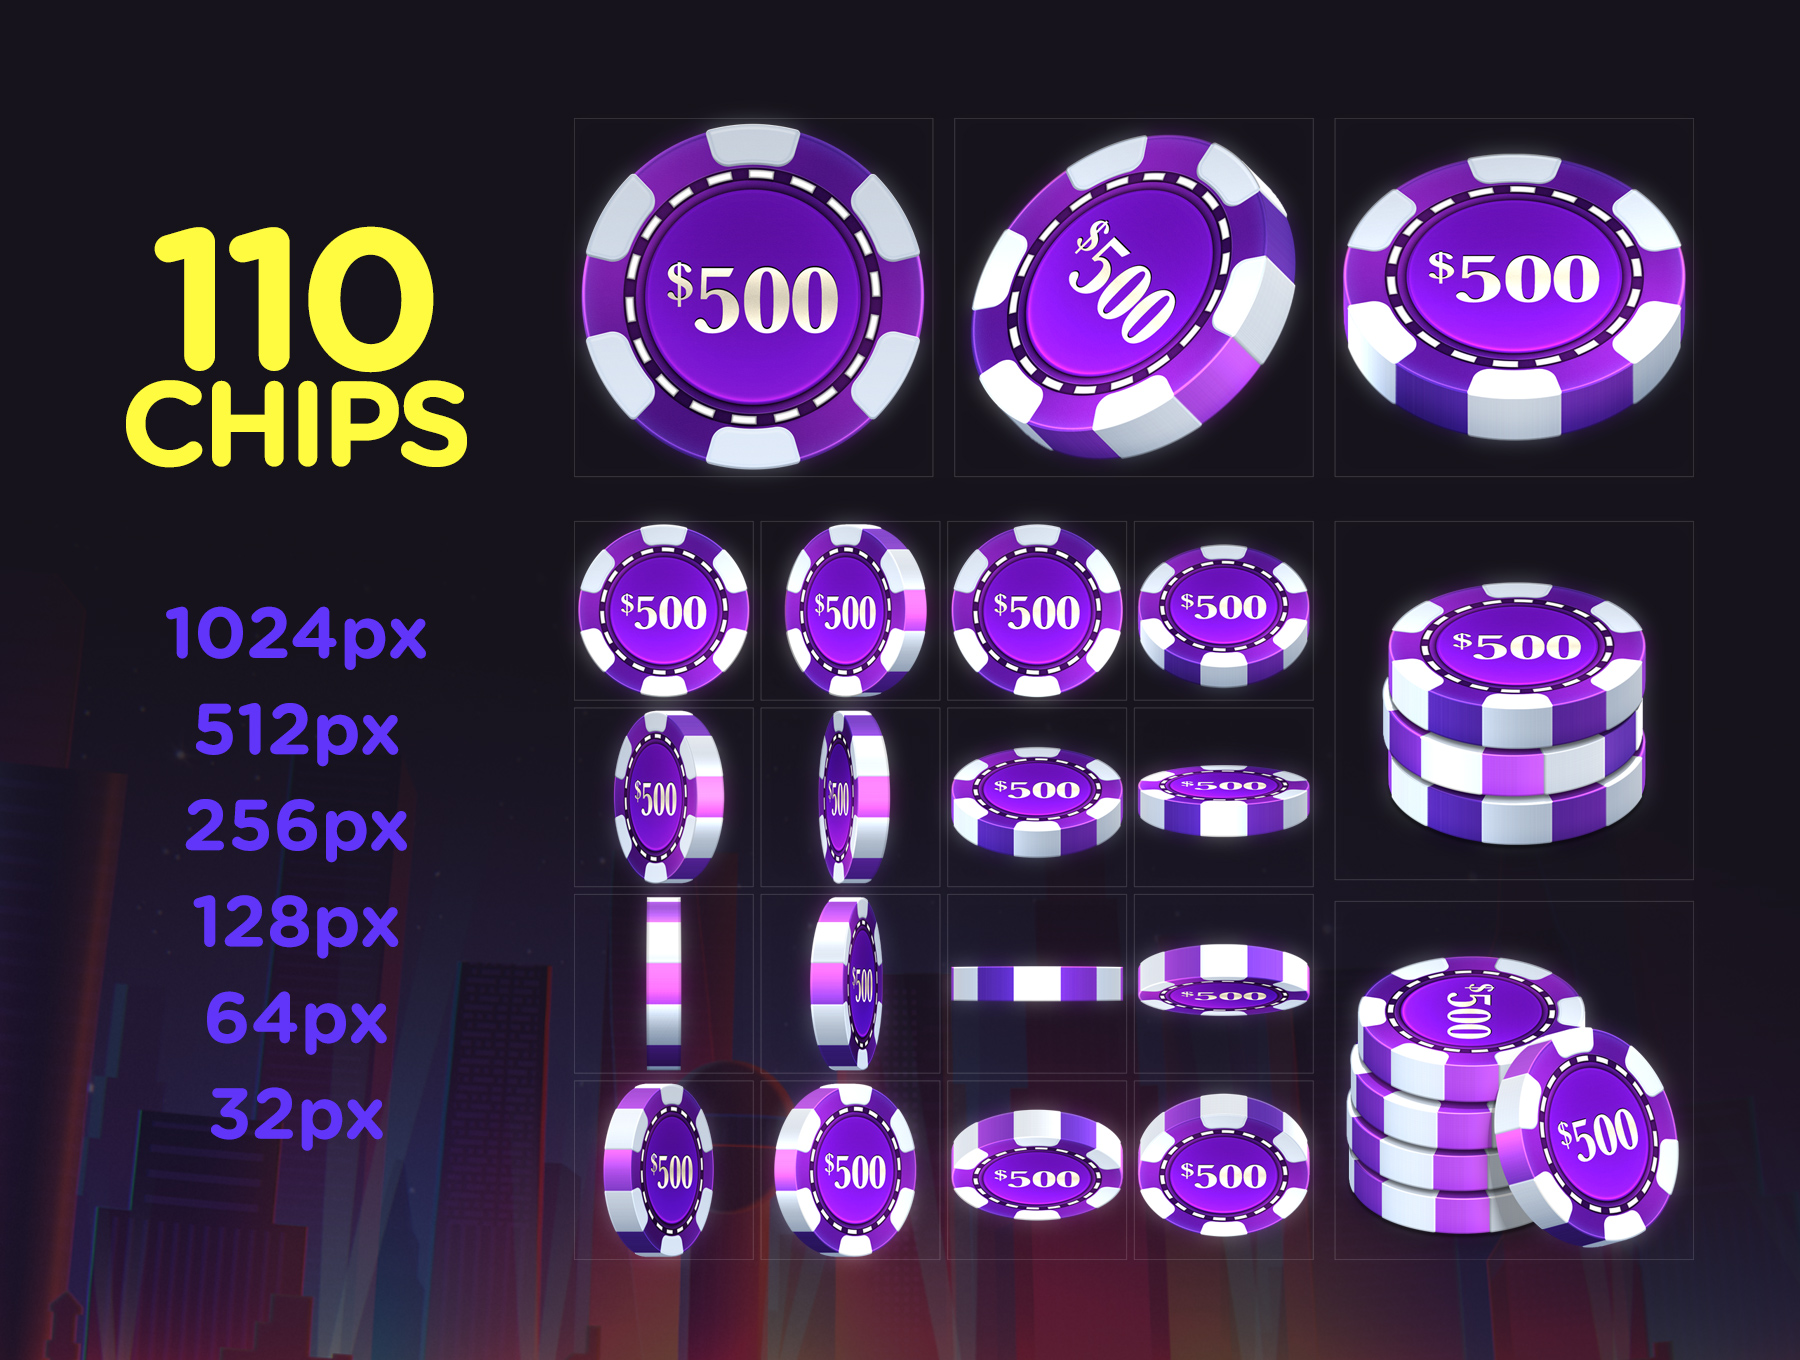 震撼的扑克筹码包Poker Chip Pack 1